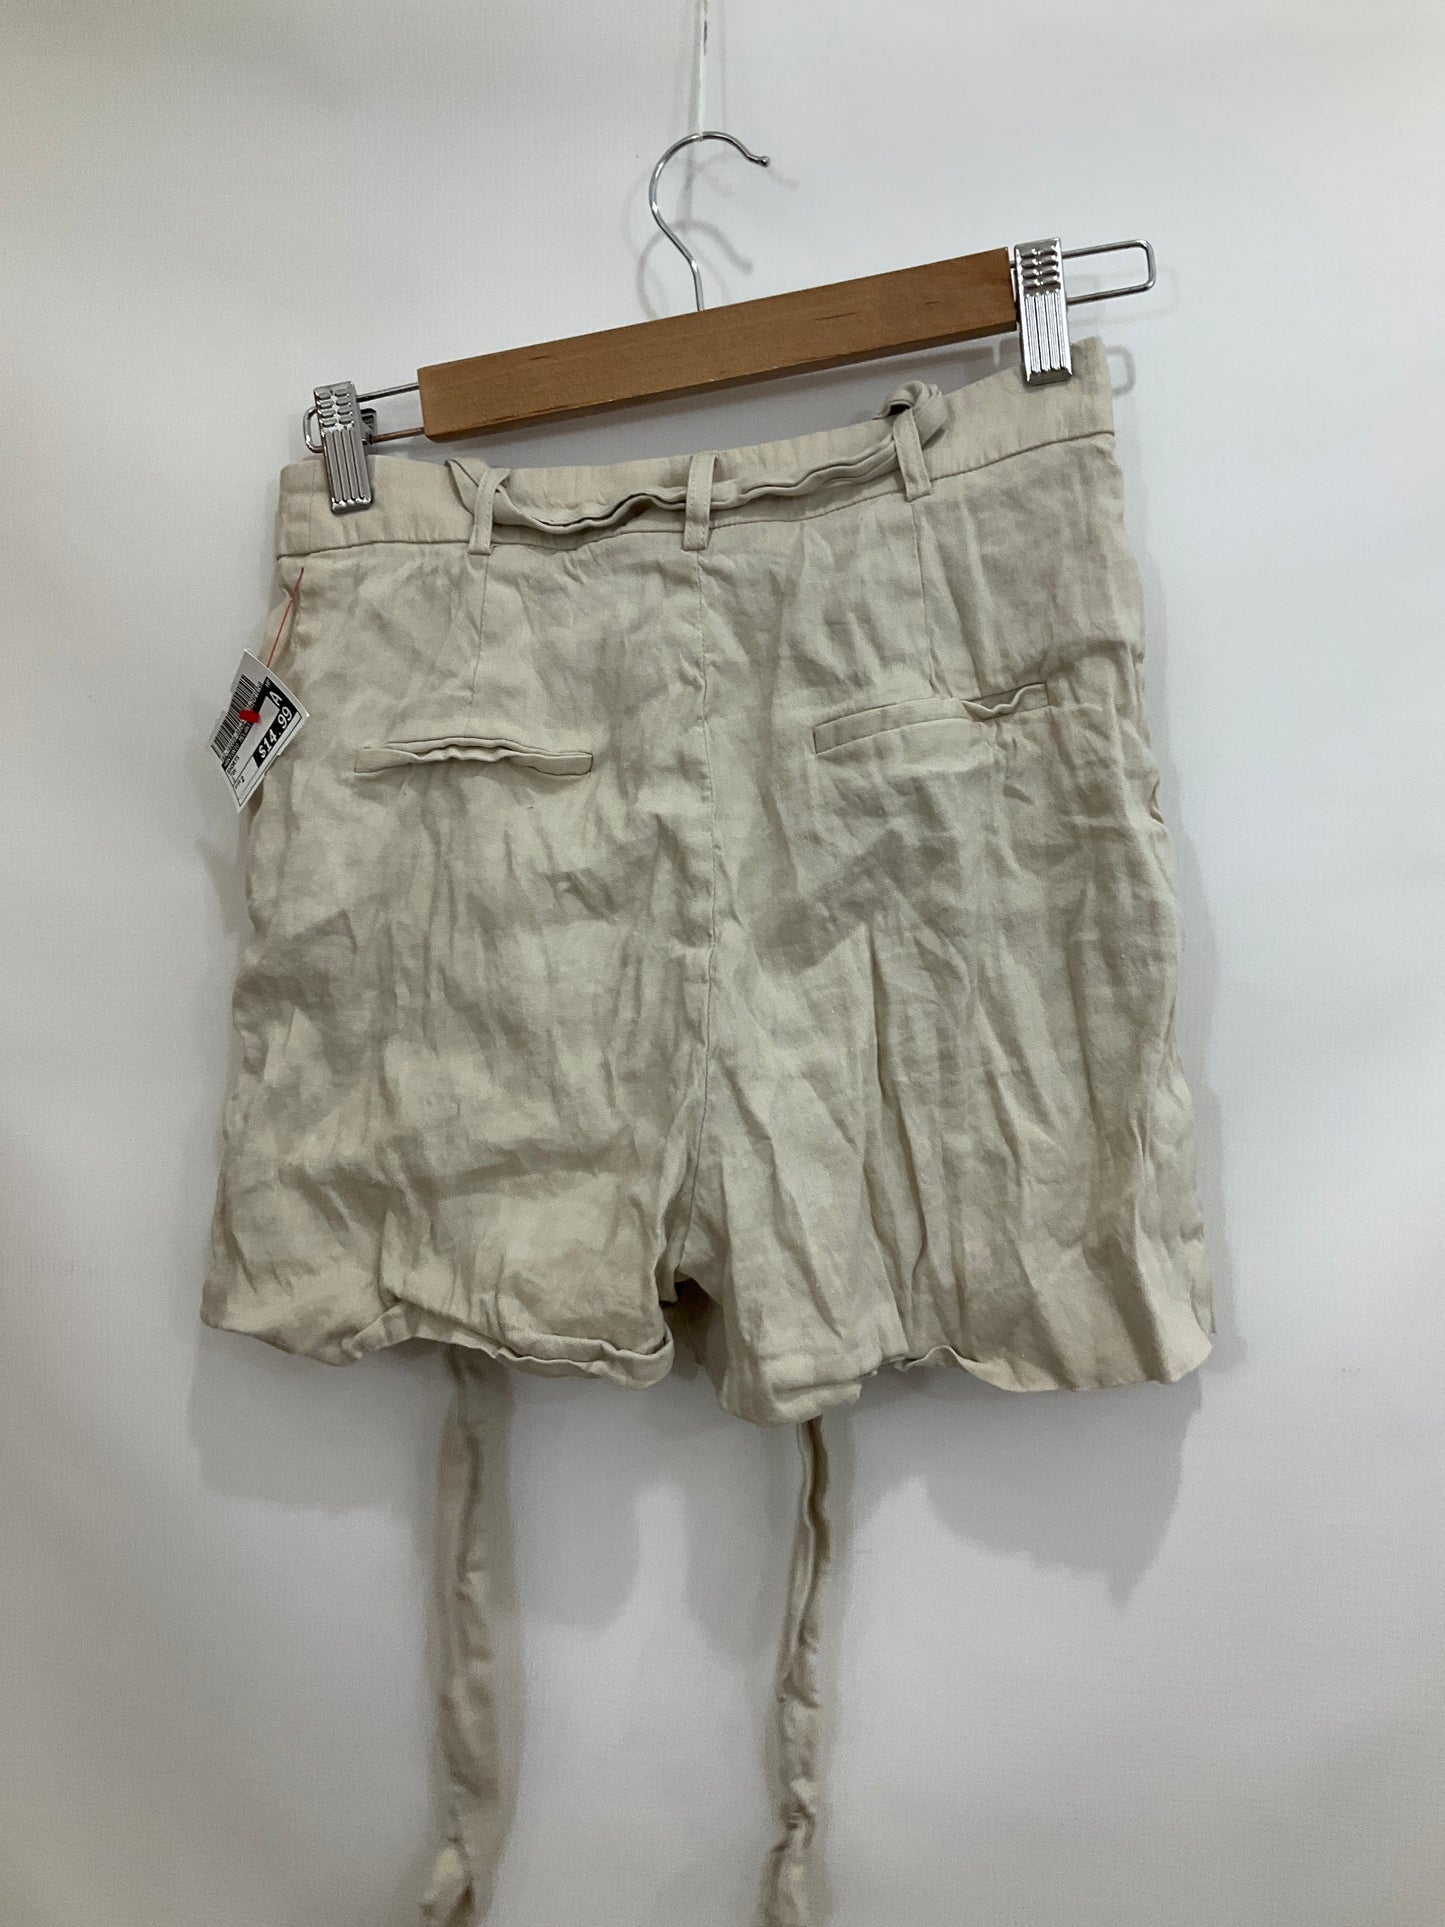 Shorts By Antonio Melani  Size: 2